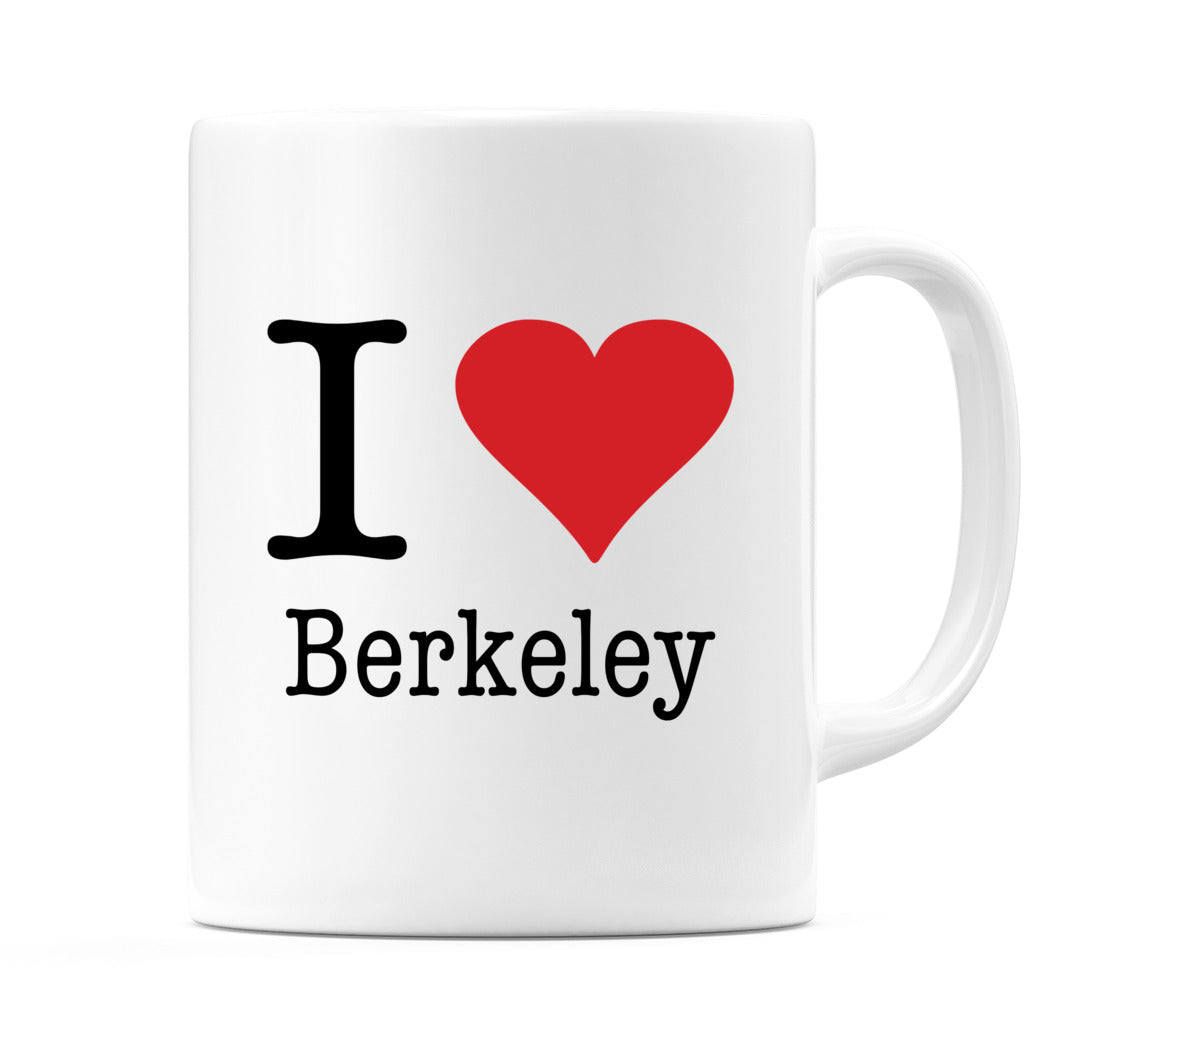 I Love Berkeley Mug